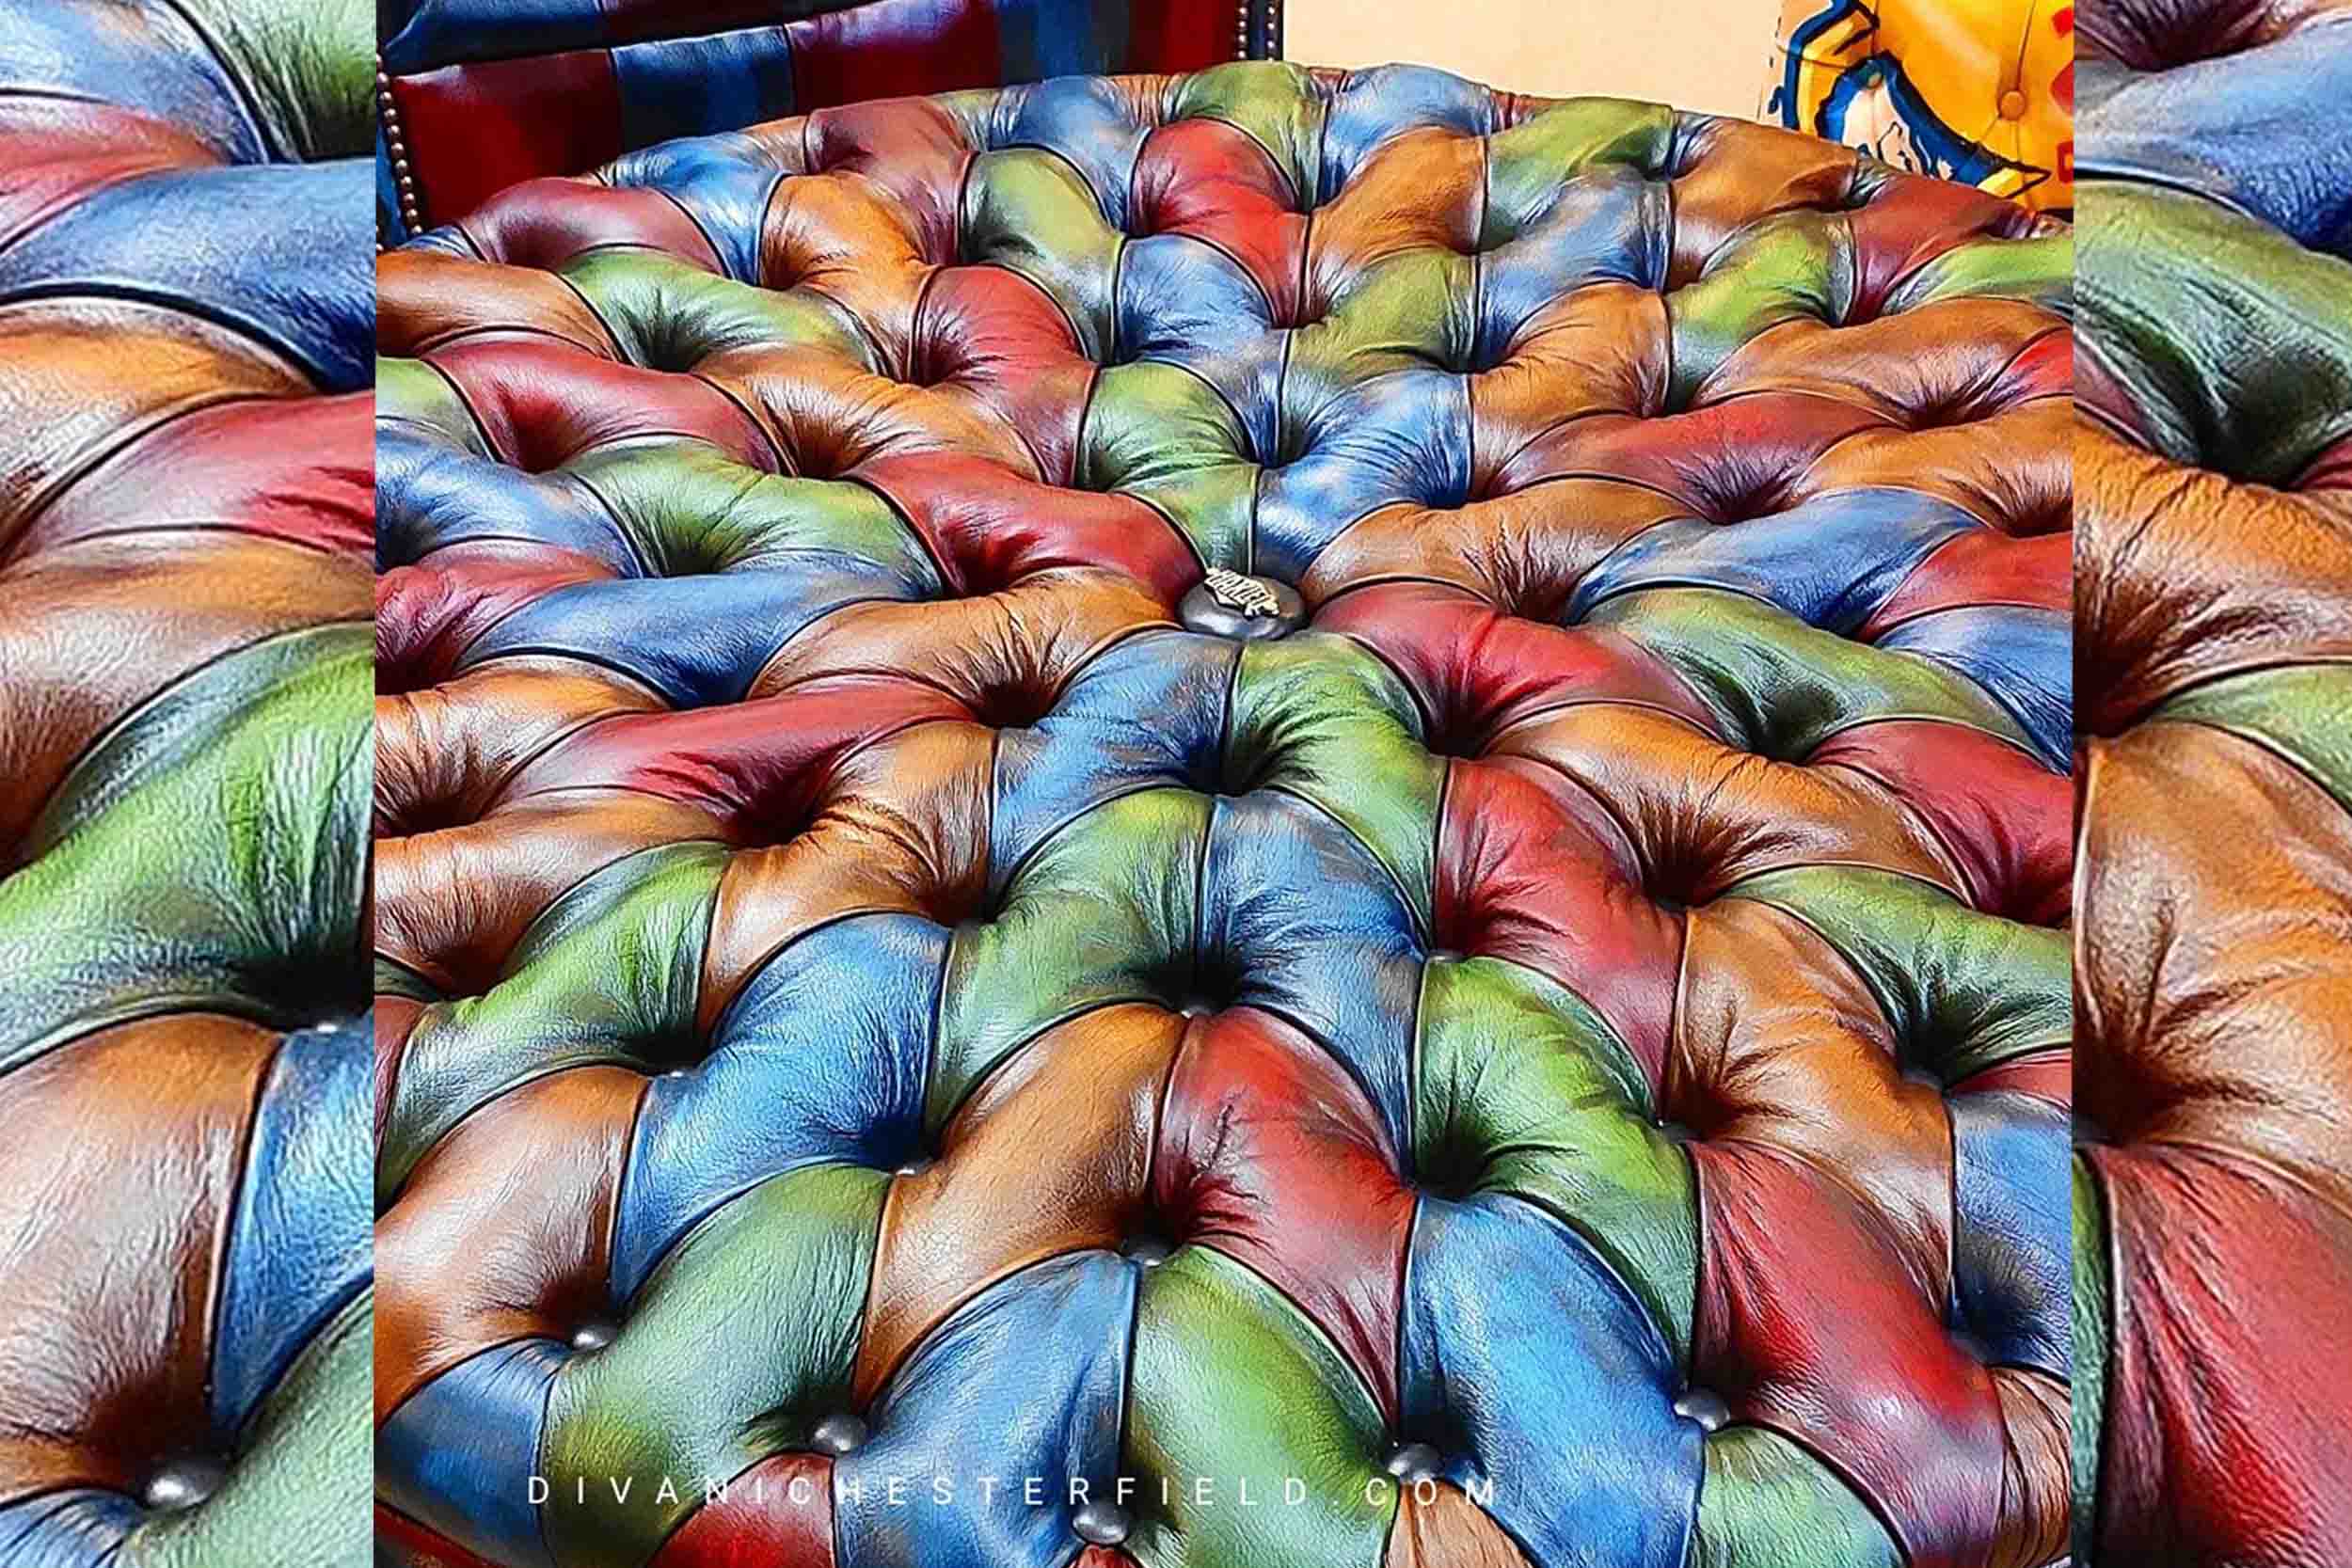 pouf circolare chesterfield pelle moderno divani su misura